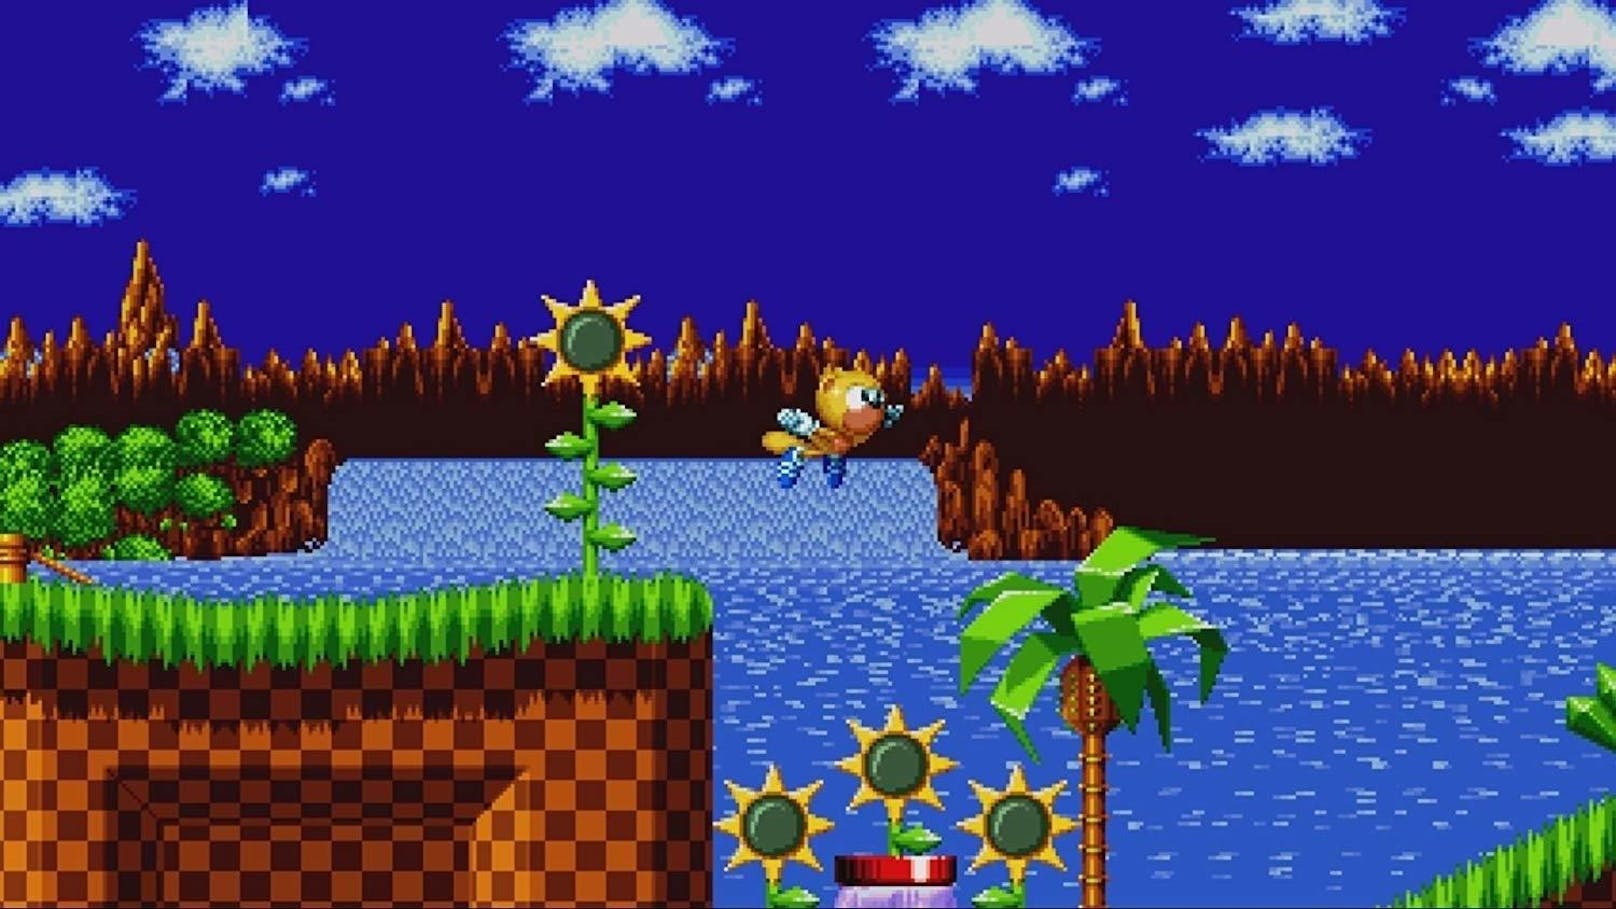 Sega beschenkt kurz vor dem Weihnachtsfest alle Sonic Fans mit einer neuen Episode der Sonic-Mania-Adventures. Freunde des blauen Igels können gemeinsam mit Sonic und seinen Freunden die weihnachtliche Stimmung zurück auf den heimischen Bildschirm bringen. Die neuste Folge trägt daher den passenden Namen Sonic Mania Adventures: Holiday Special. Die heutige Folge startet mit dem Erscheinen Metal Sonics und Doctor Eggmans im Dschungel, nachdem Sie wieder einmal von Sonic und seinen Freunden besiegt wurden. Einsam und alleingelassen zum Start des Wintereinbruchs passiert etwas, das das Schicksal von Metal Sonic für immer verändern könnte. <a href="https://www.youtube.com/watch?v=LYvO8eaWJNc">Alle bereits erschienenen Folgen.</a>